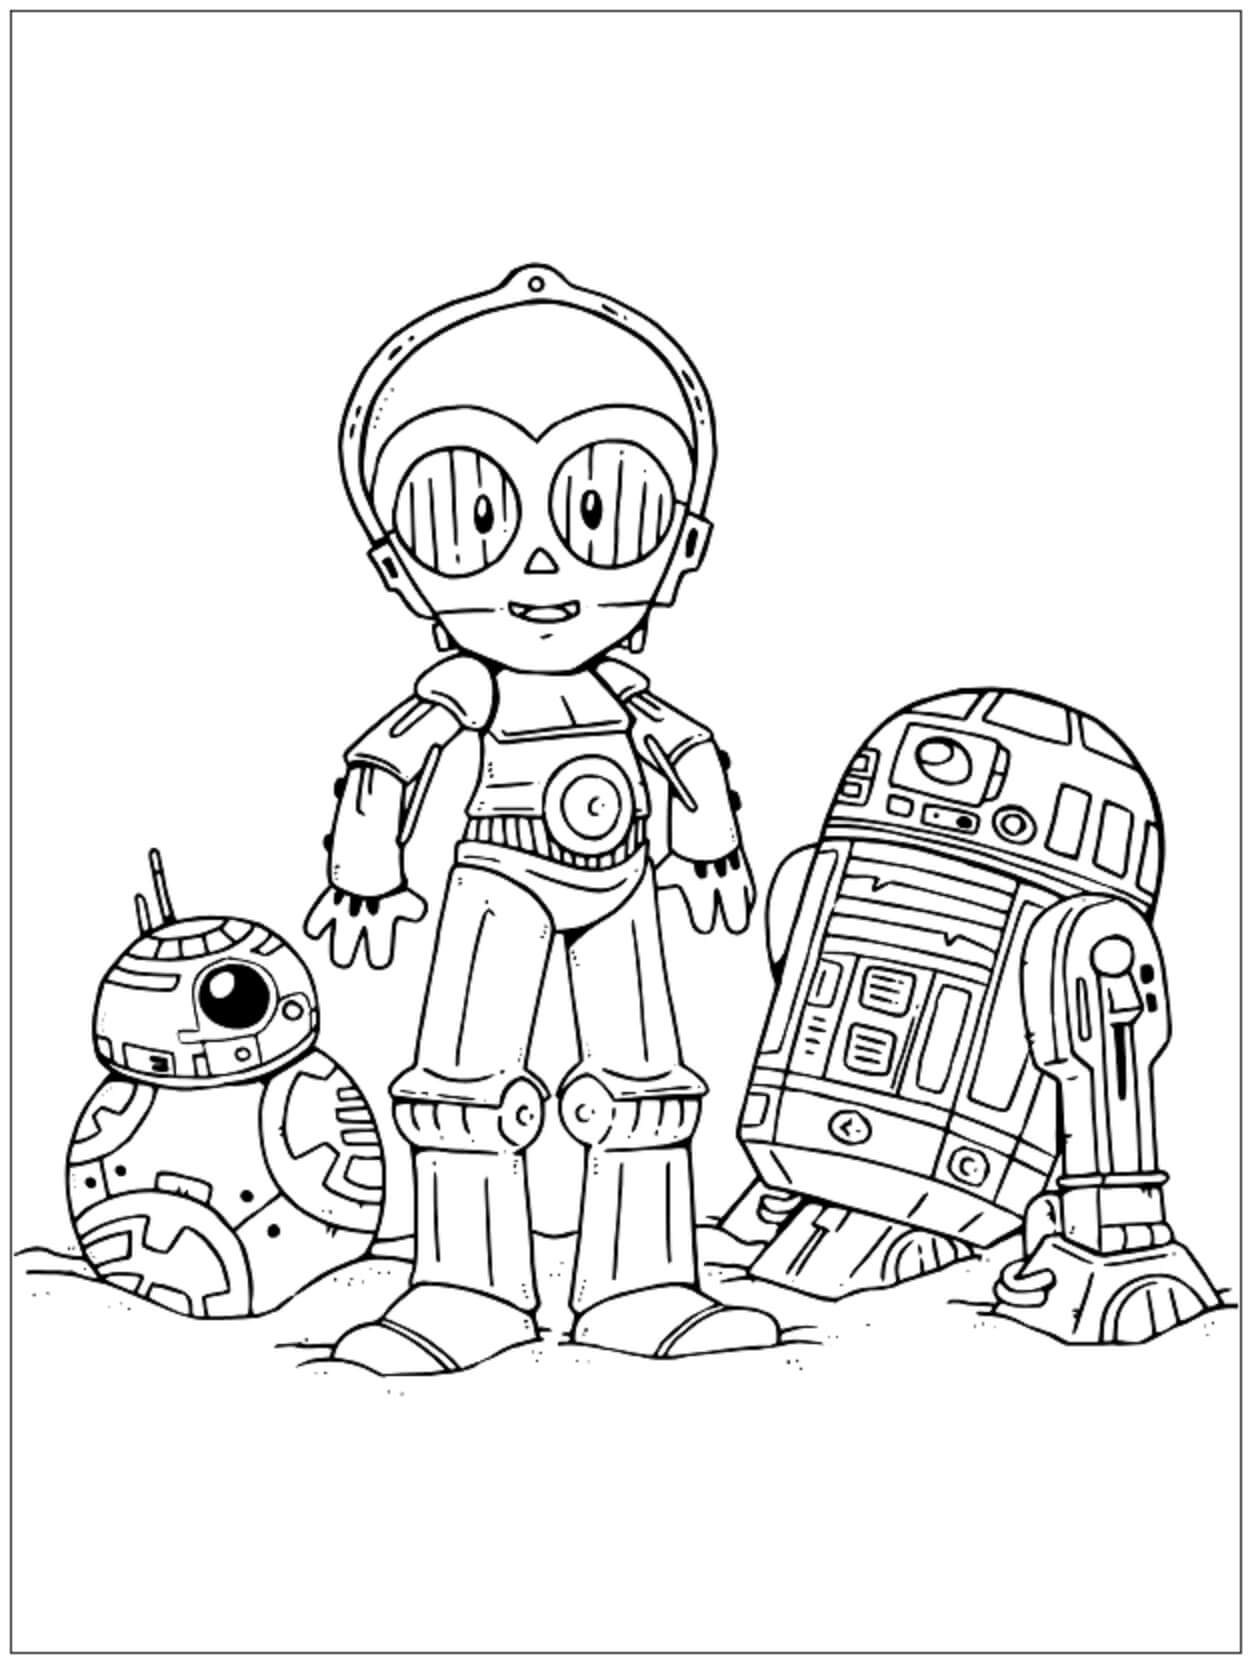 C-3P0, R2-D2 et BB-8 coloring page